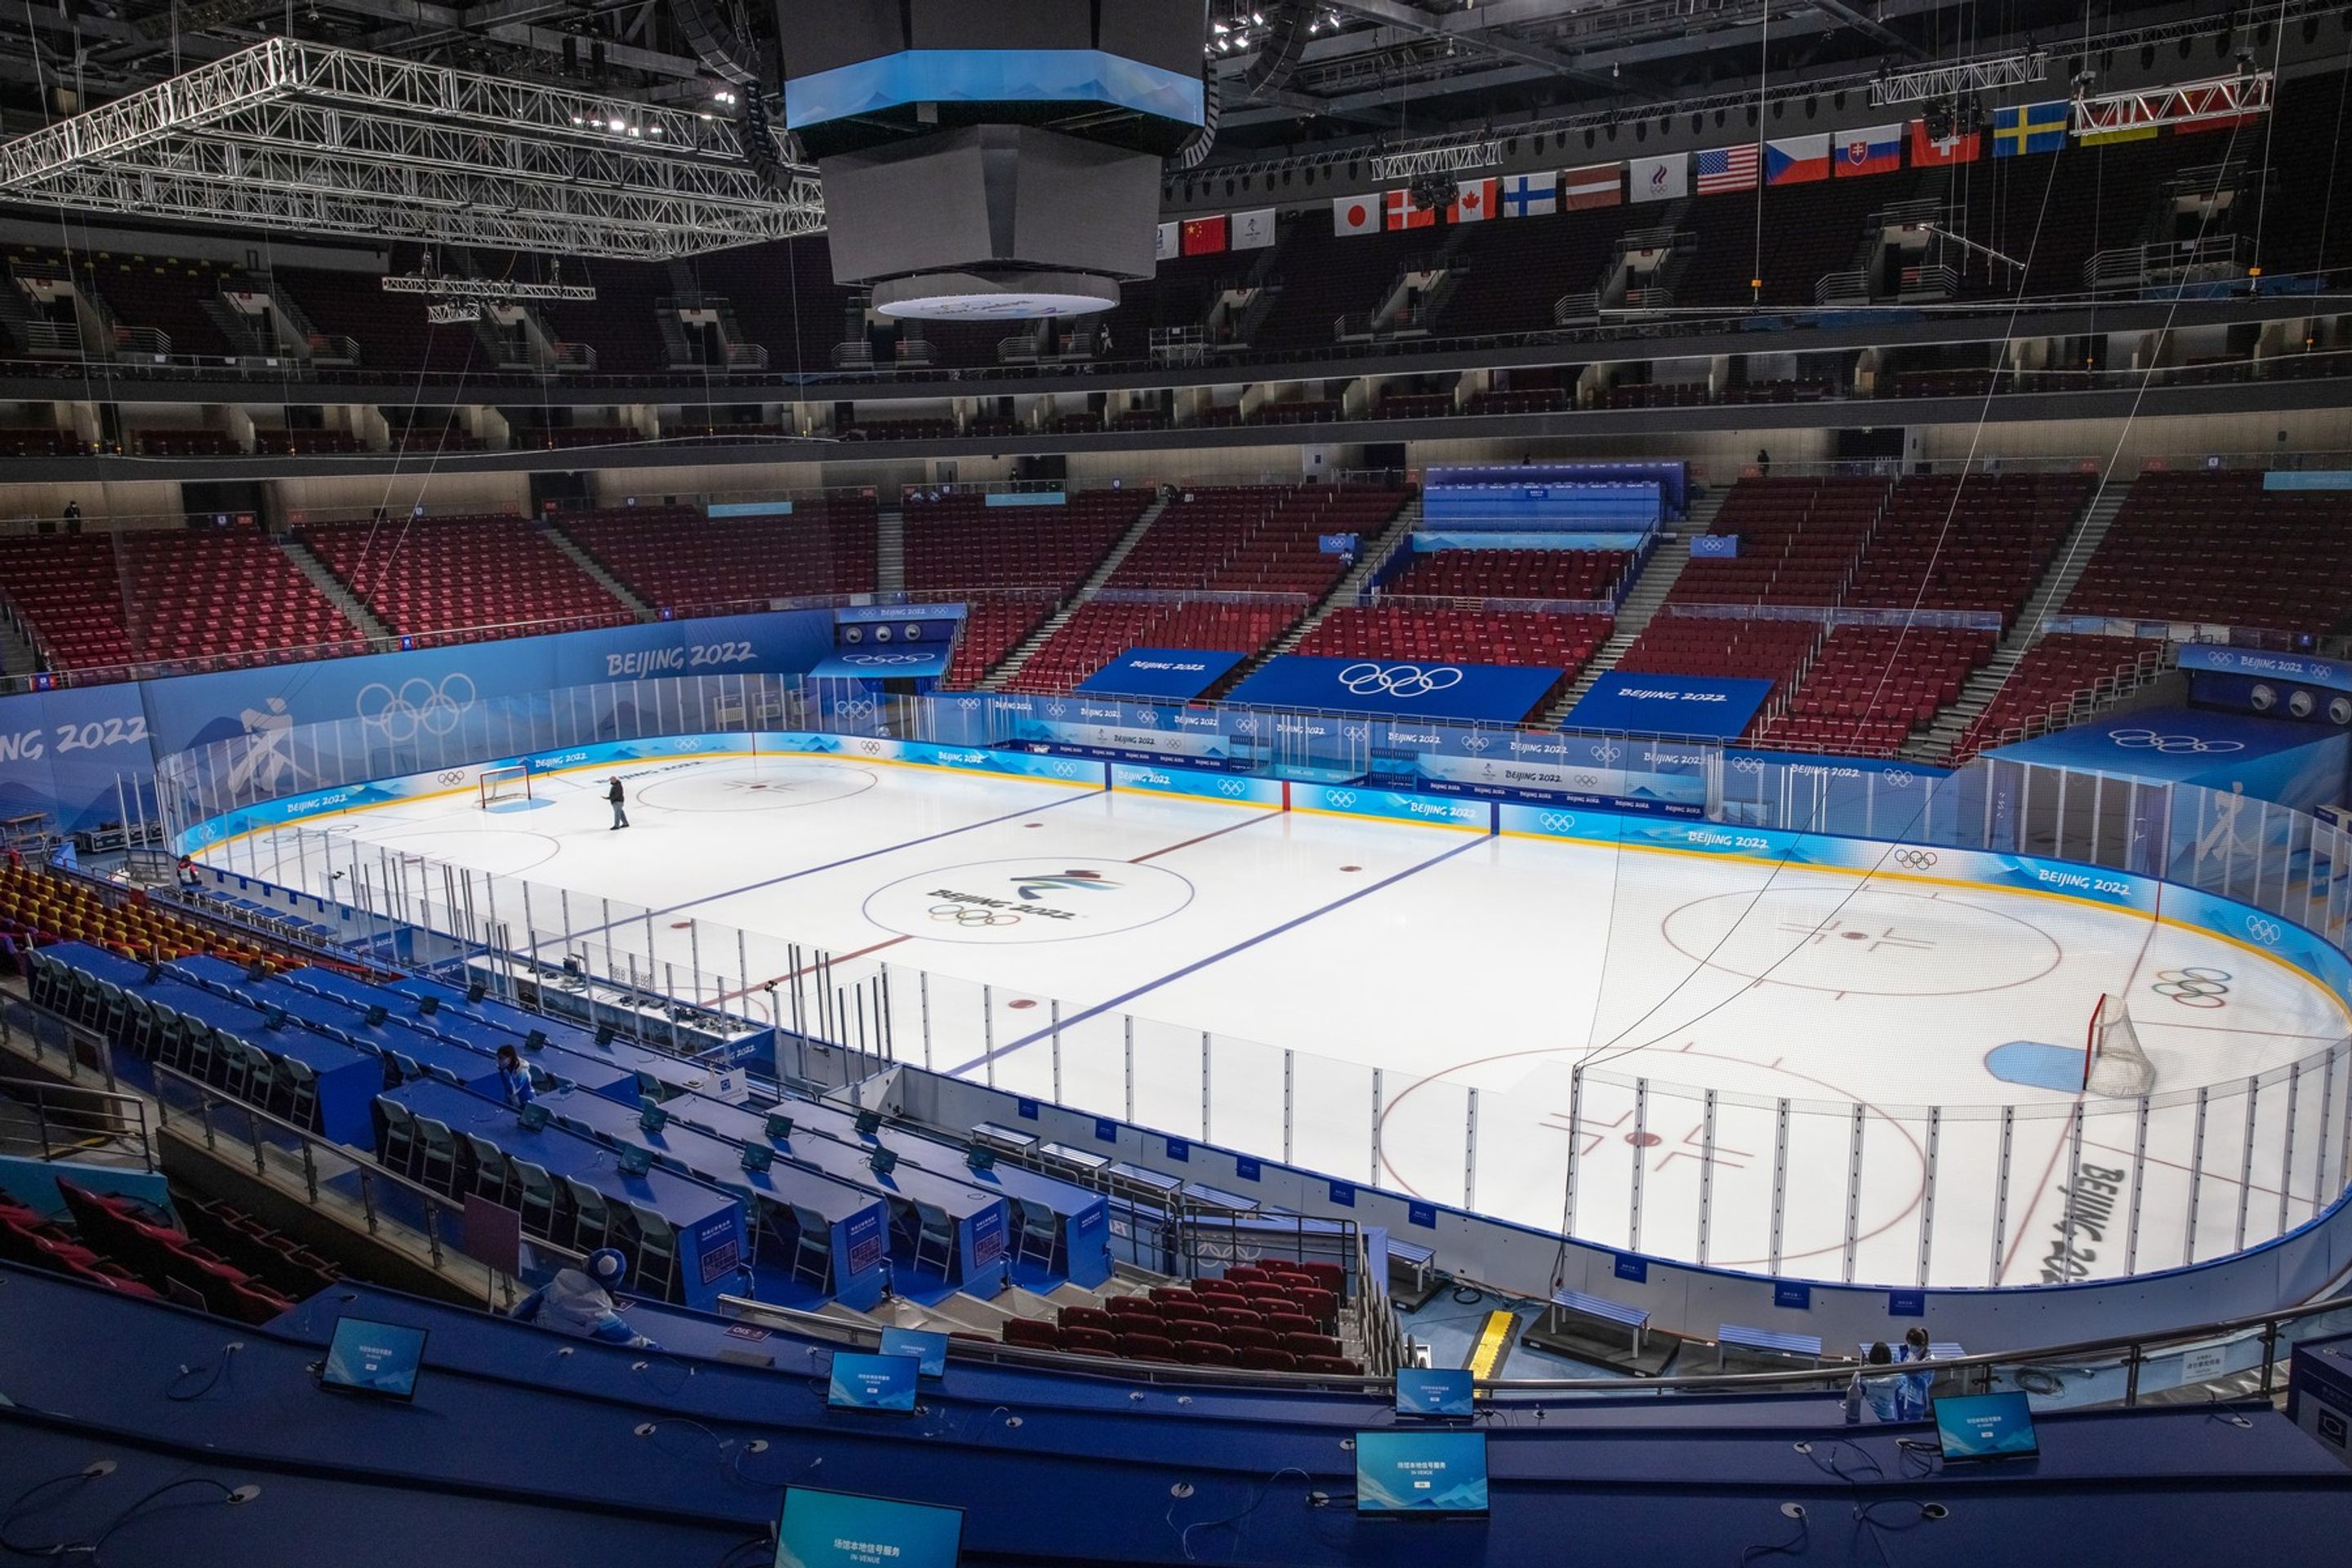 Ledová plocha ve Sportovním centru Wukesong - Pekingské sportoviště pro zimní olympijské hry v Číně 2022 (9/14)